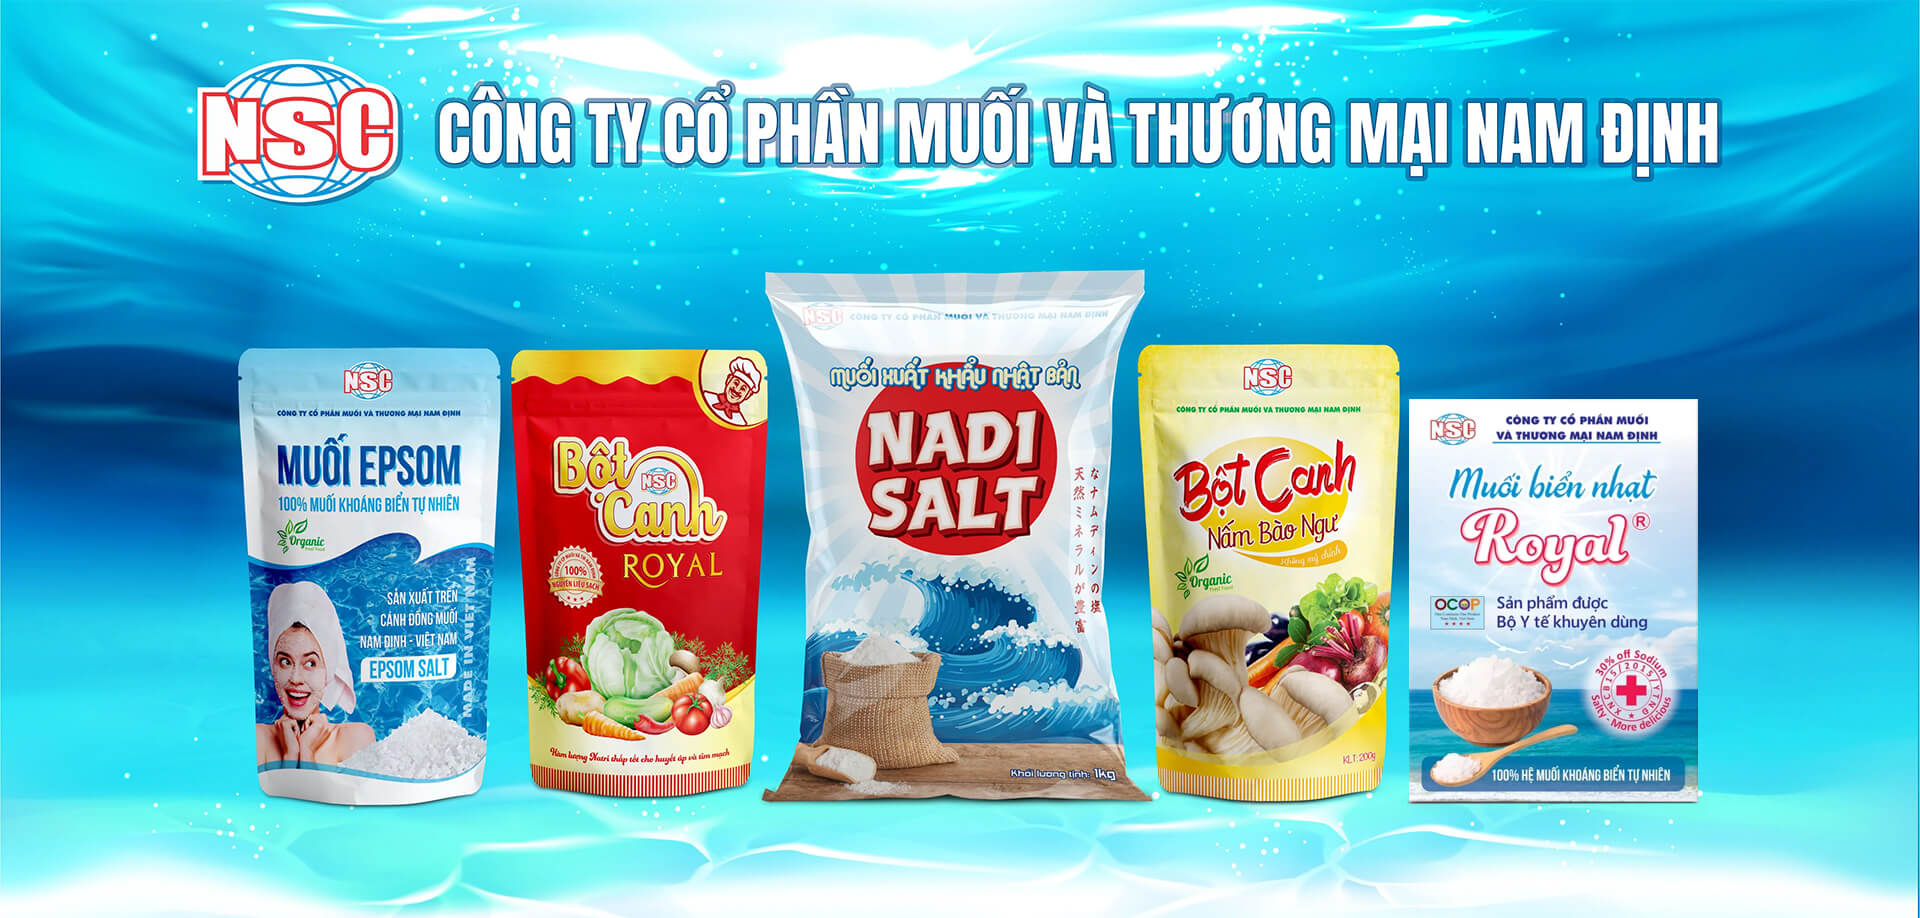 Công ty cổ phần muối và thương mại Nam Định